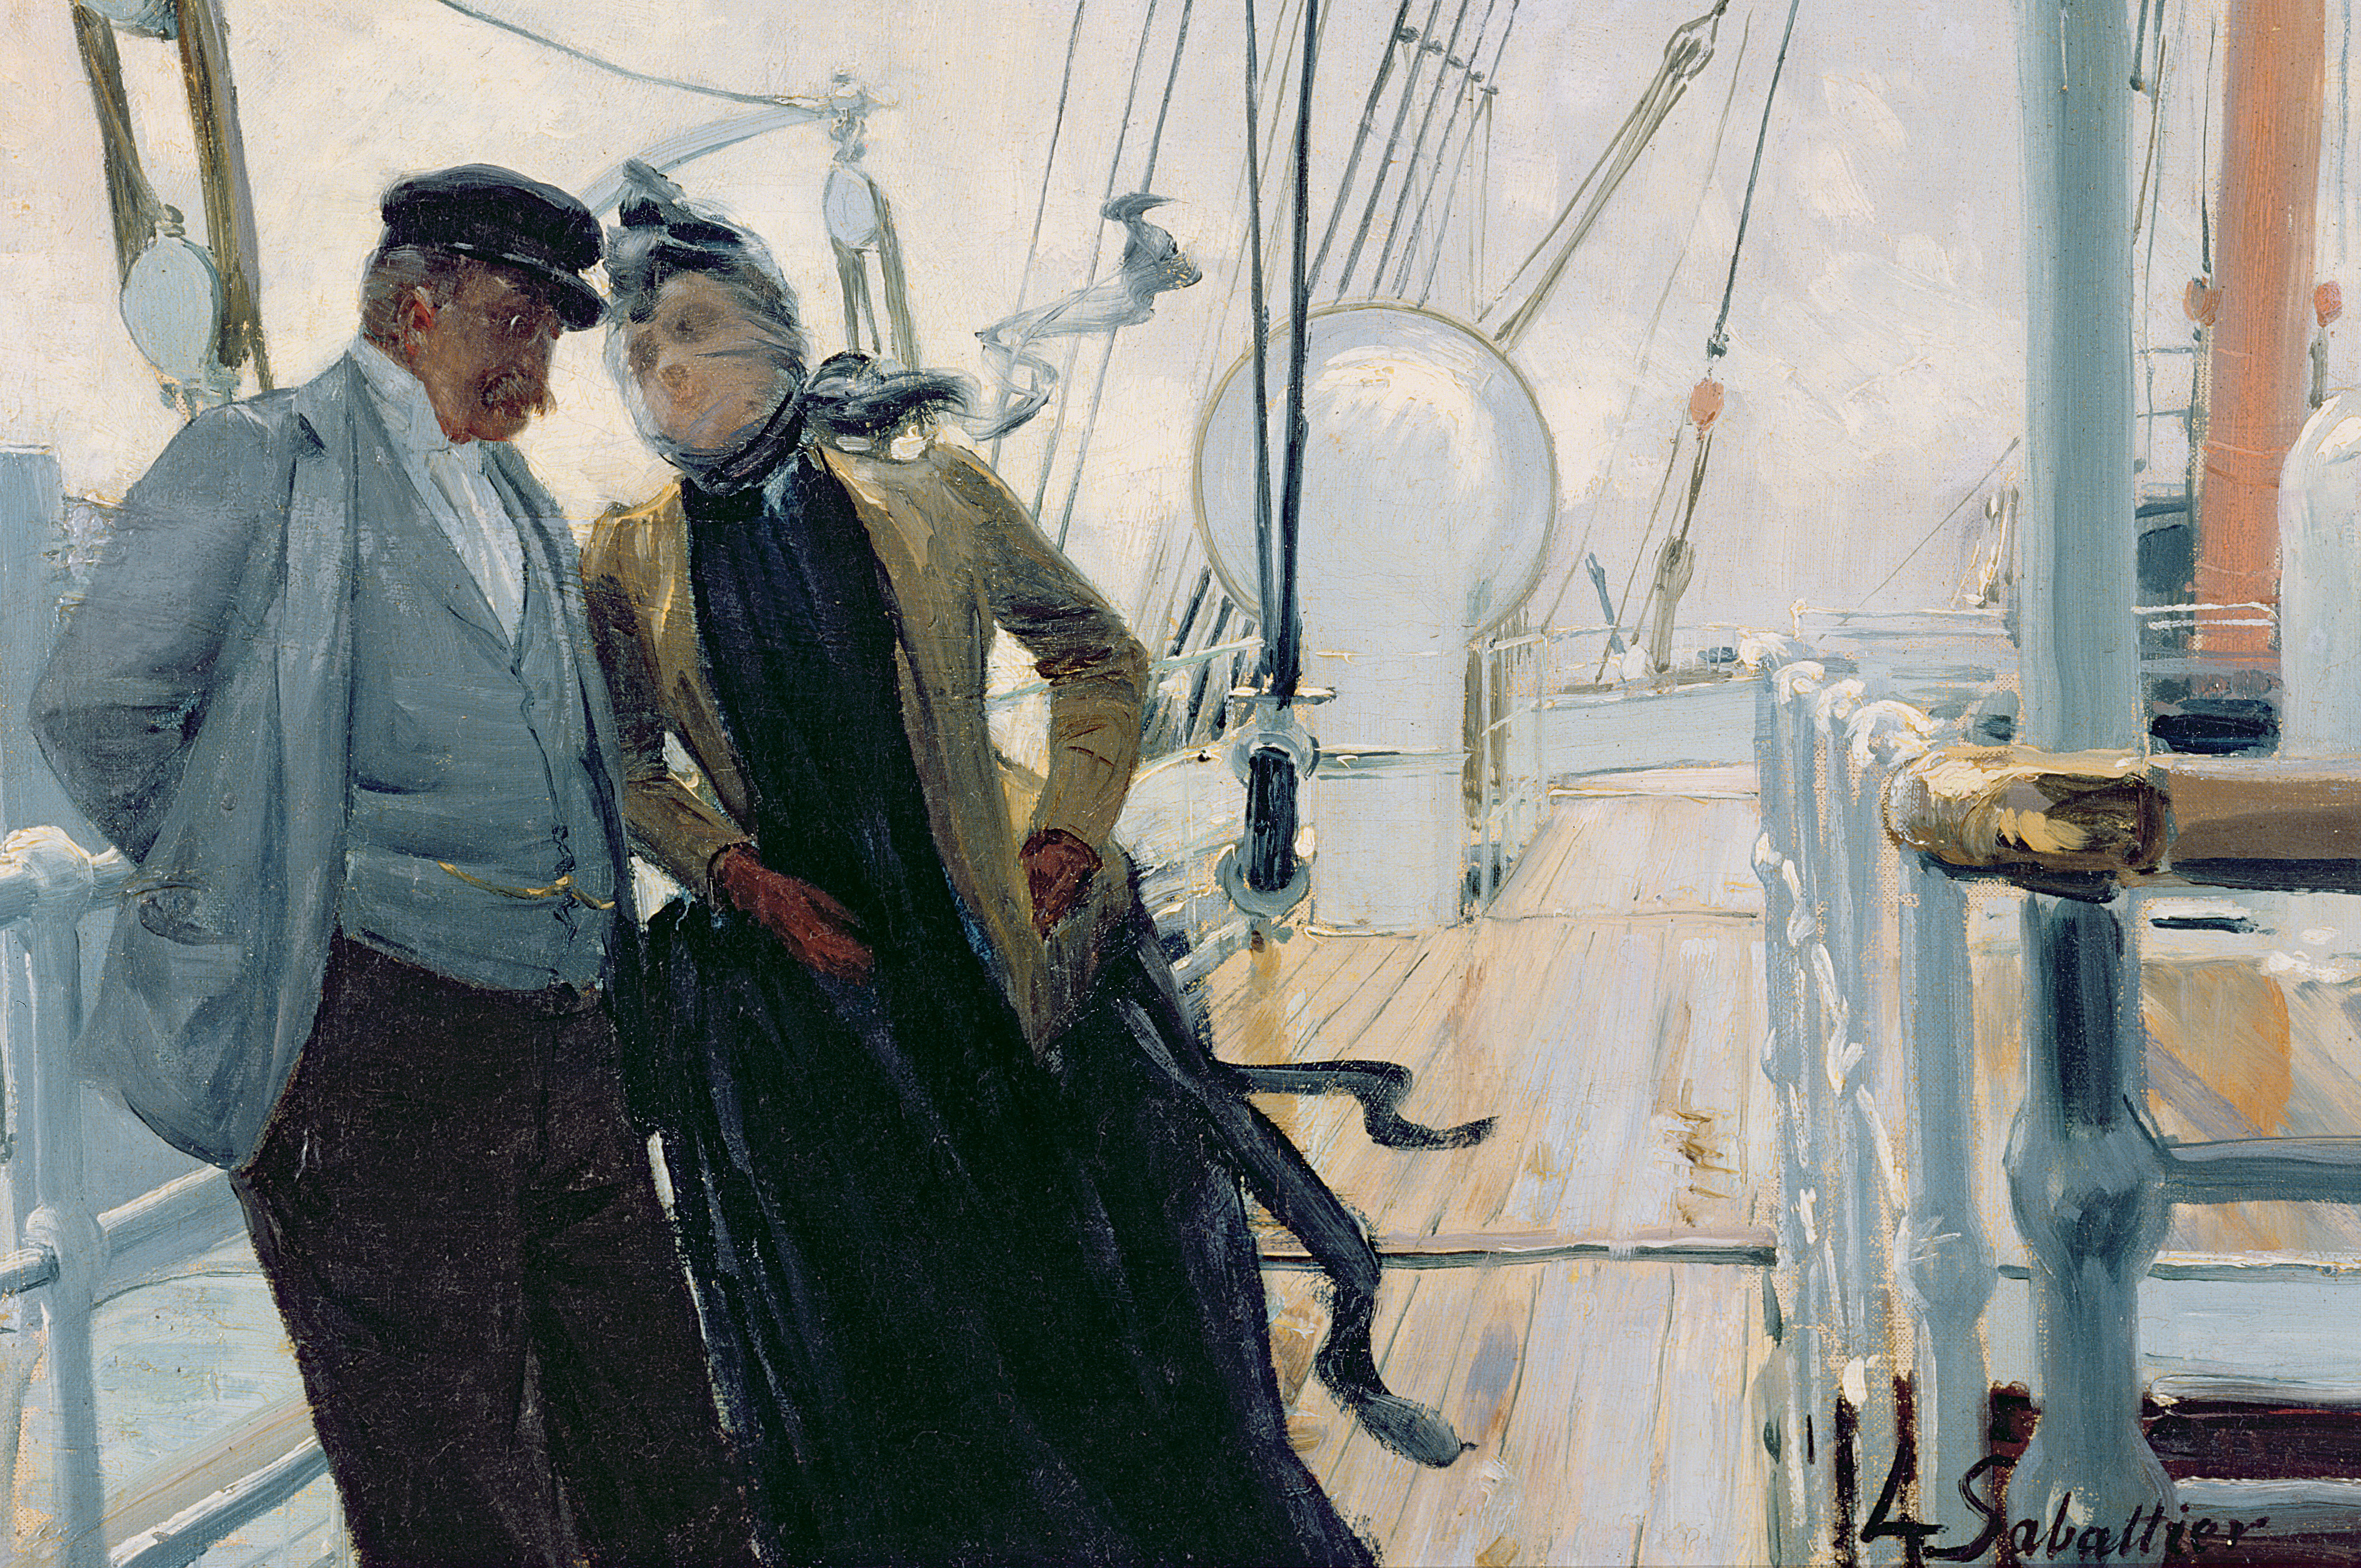 Двое пароходов. Луи Реми Сабатье. Луи-Реми Сабатье (1863-1935). Художник Louis Rémy Sabattier. Капитан на палубе корабля.